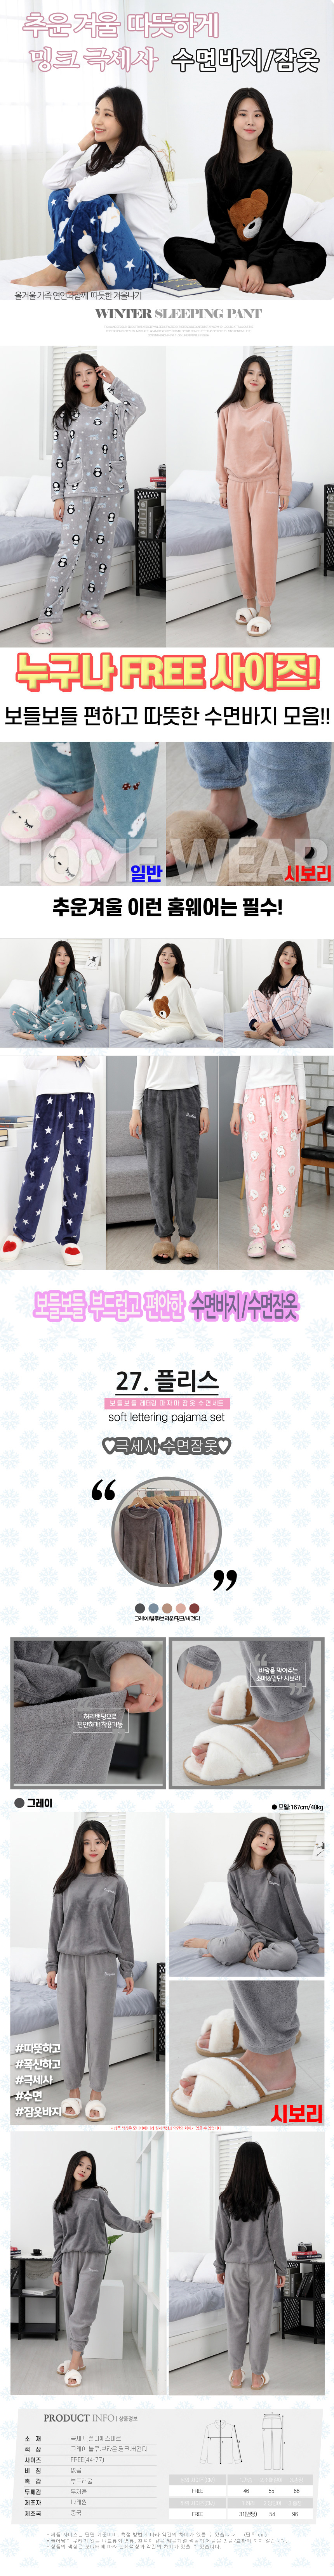 sleeping_pajamas_set_27_01.jpg